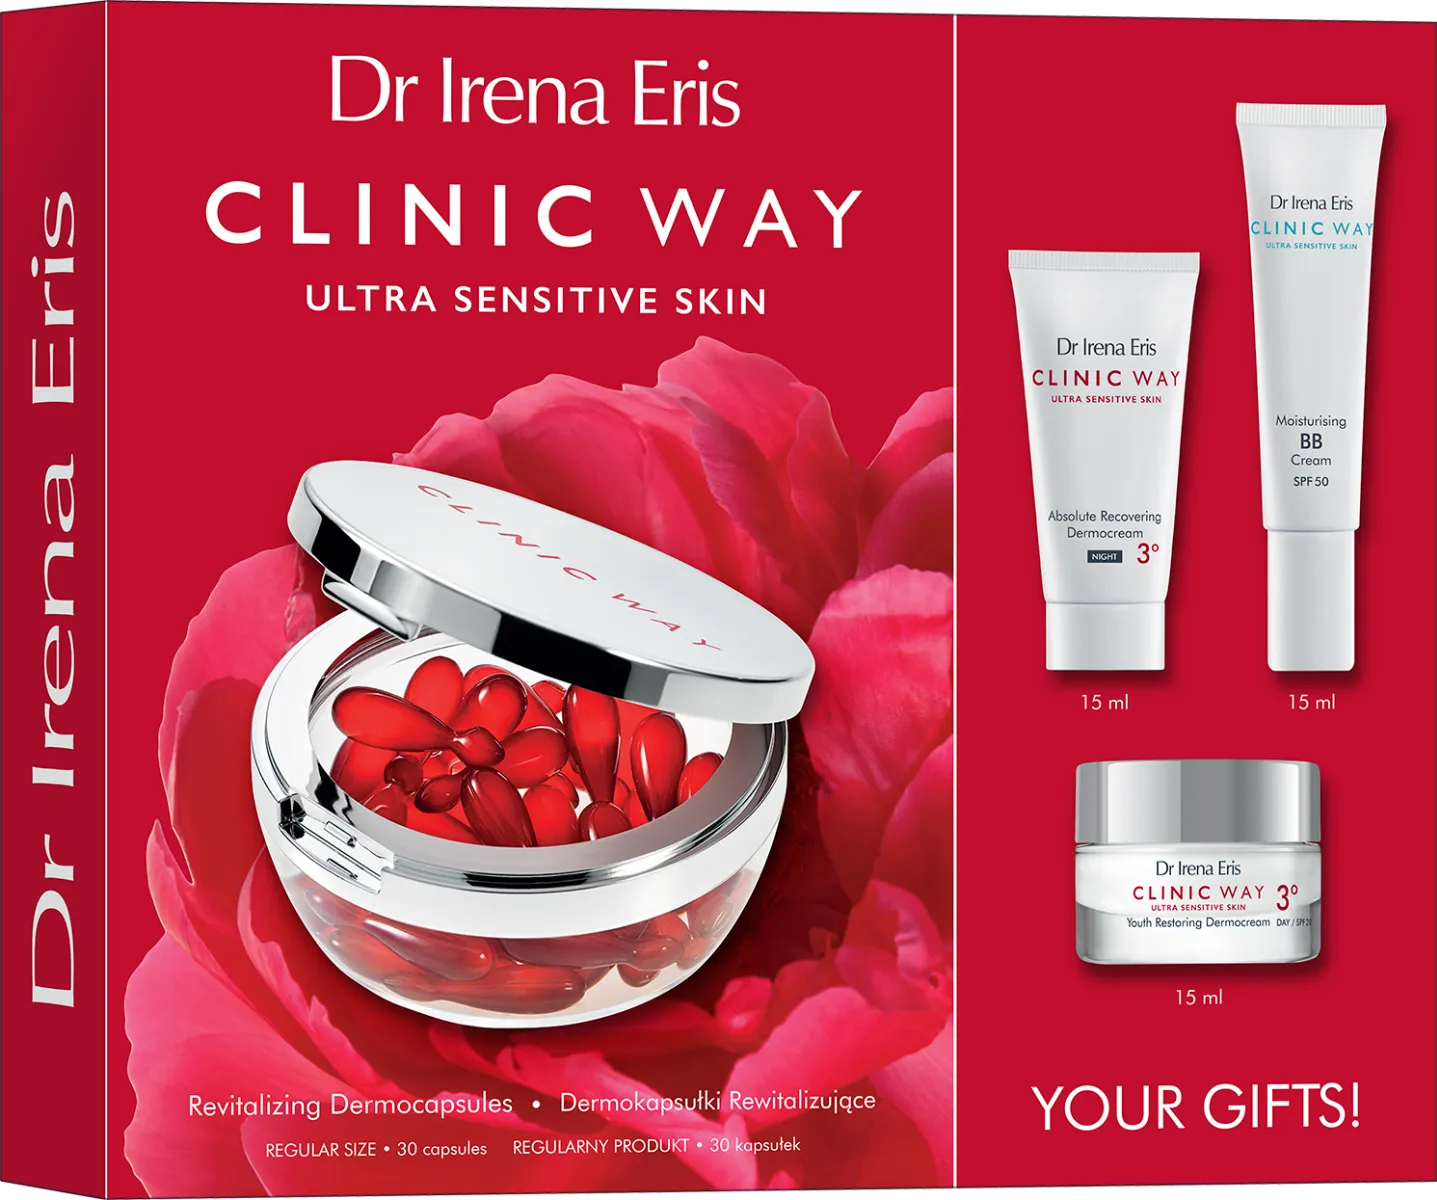 Dr Irena Eris Clinic Way Rewitalizacja i Odmłodzenie zestaw kosmetyków, 30 kapsułek + 15 ml + 15 ml + 15 ml